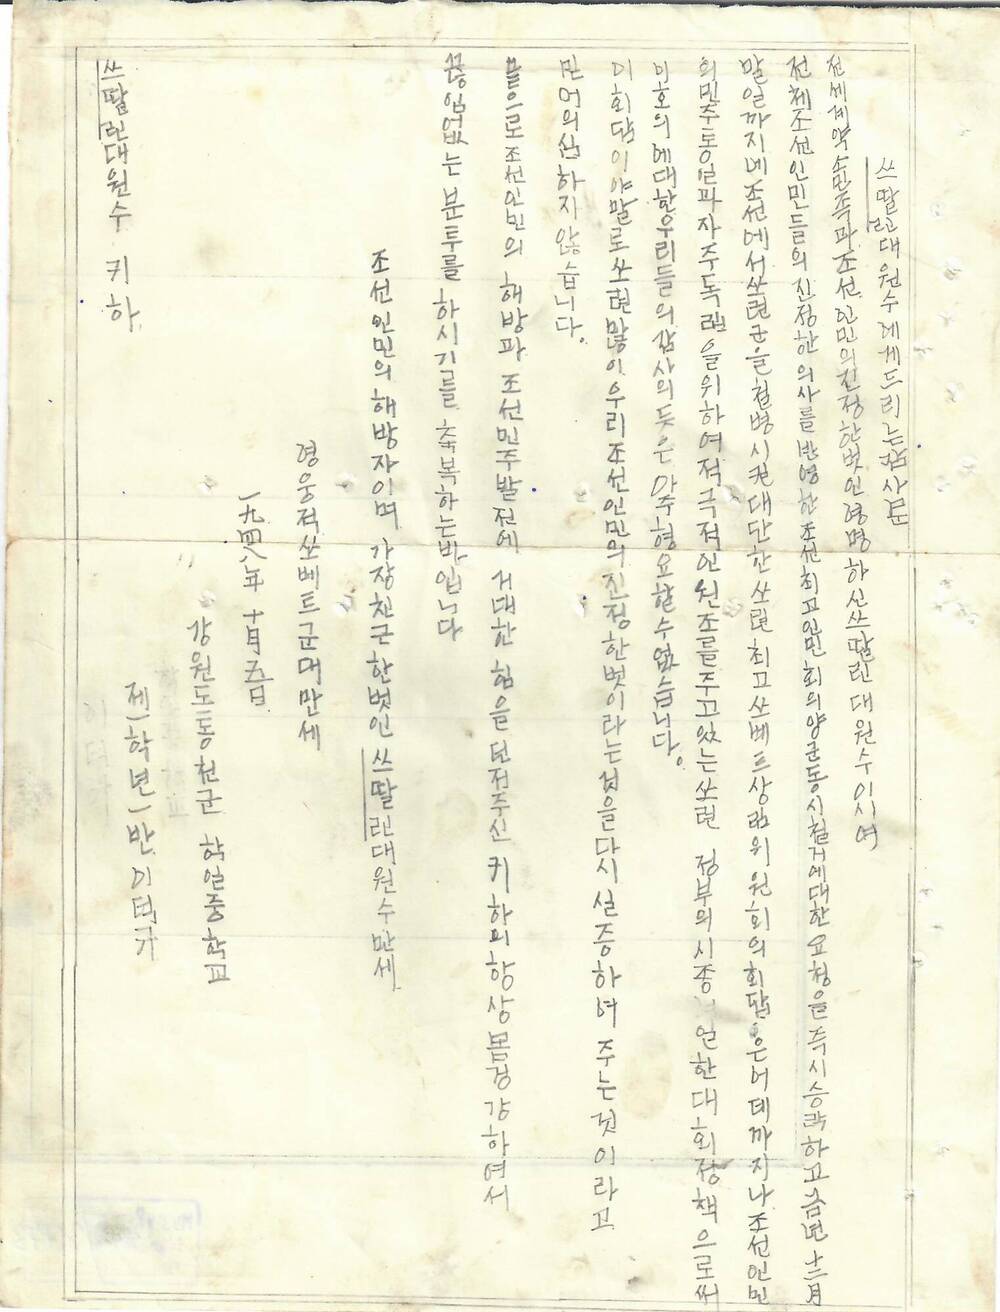 Письмо И.В. Сталину и командованию Советской Армии в связи с эвакуацией советских войск из пределов Северной Кореи с выражением пламенной любви и благодарности